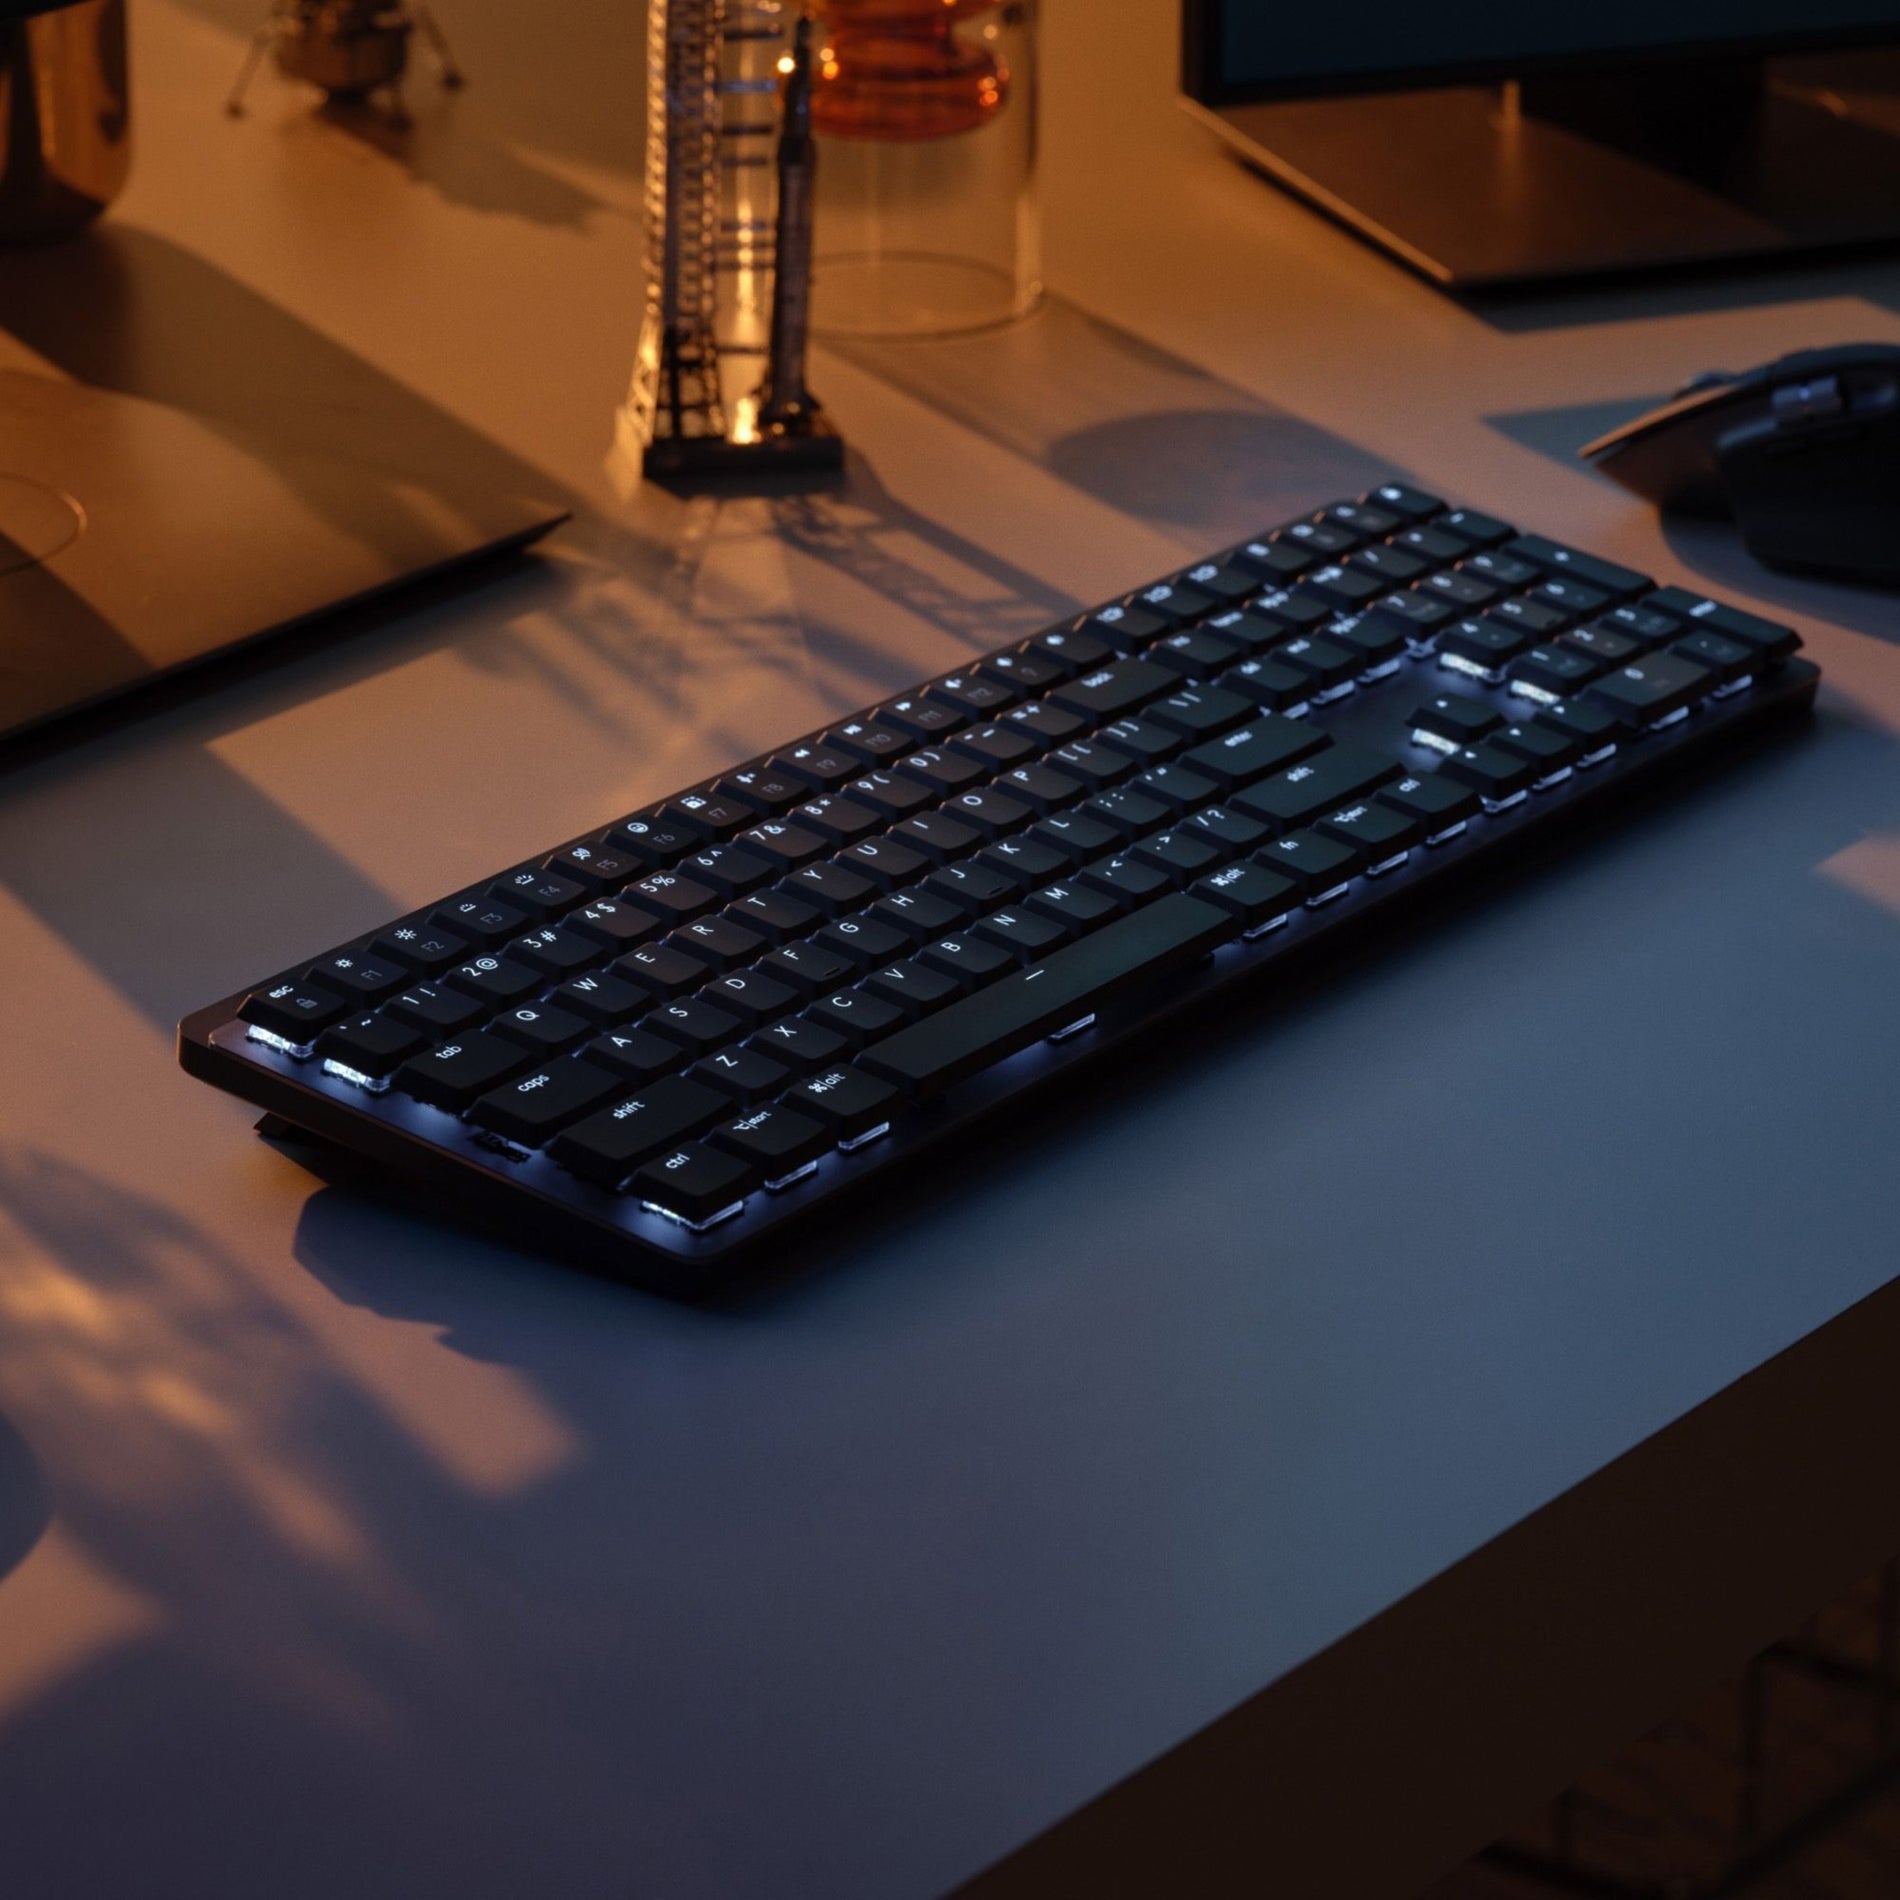 Logitech MX Mechanical Wireless Illuminated Keyboard - keyboard - full size  - 920-010547 - Keyboards 